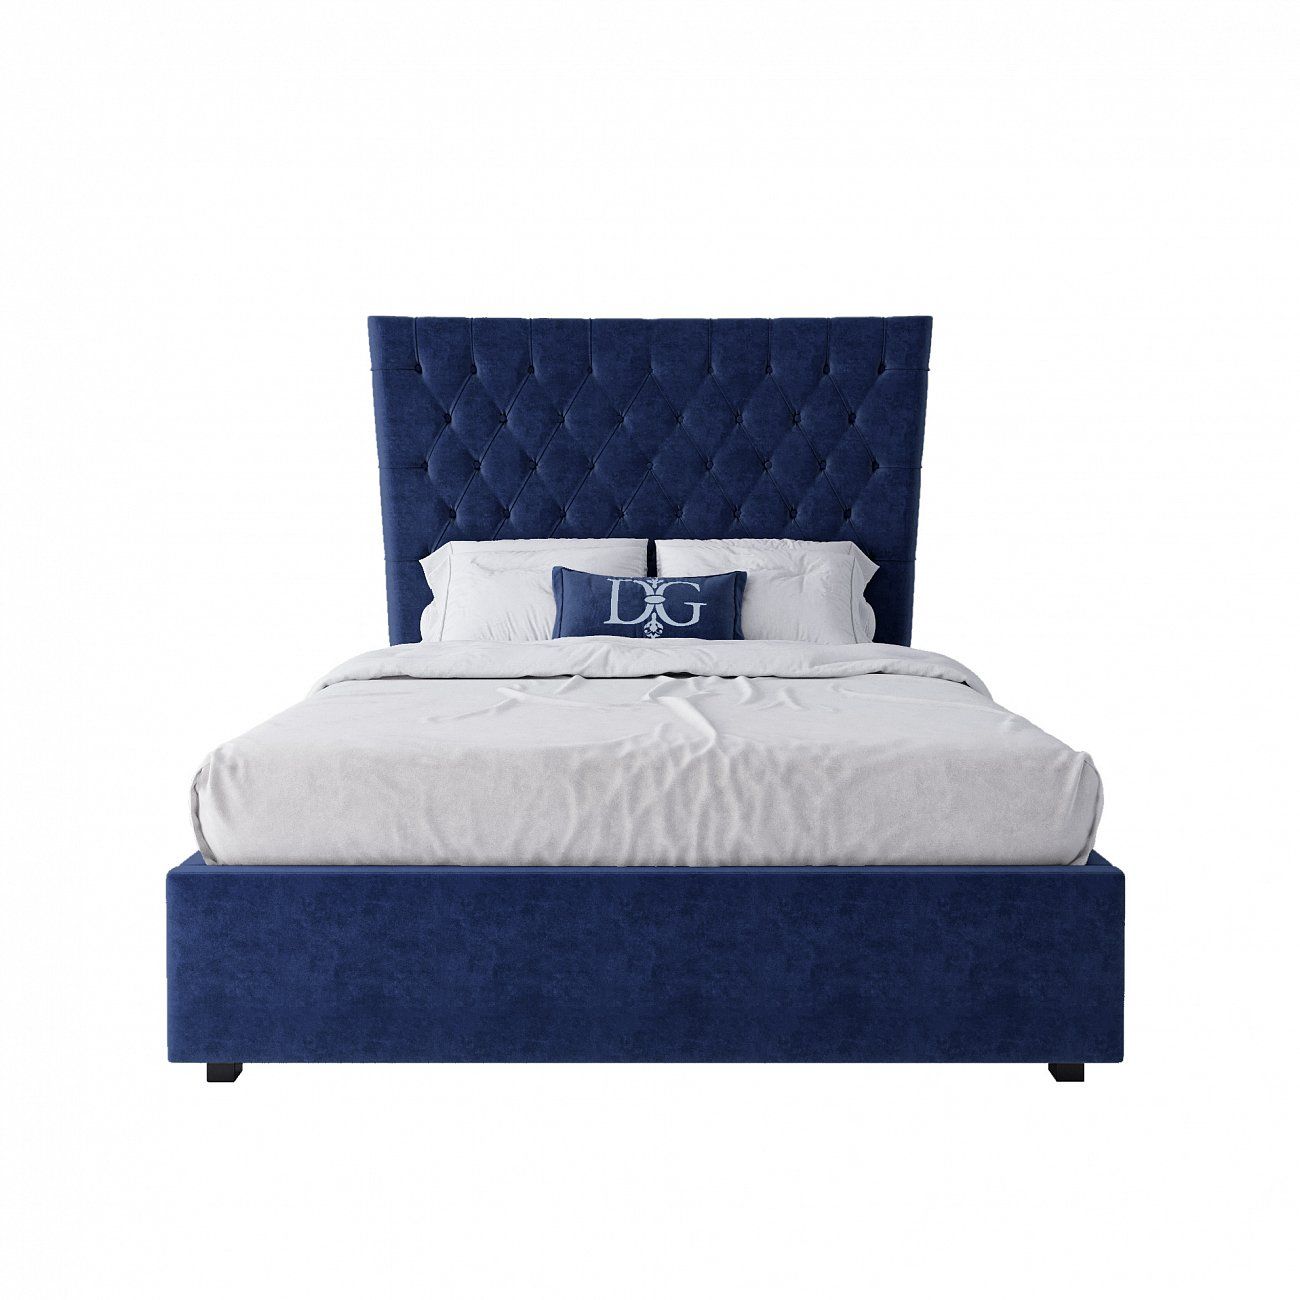 Кровать подростковая с каретной стяжкой 140х200 синяя QuickSand